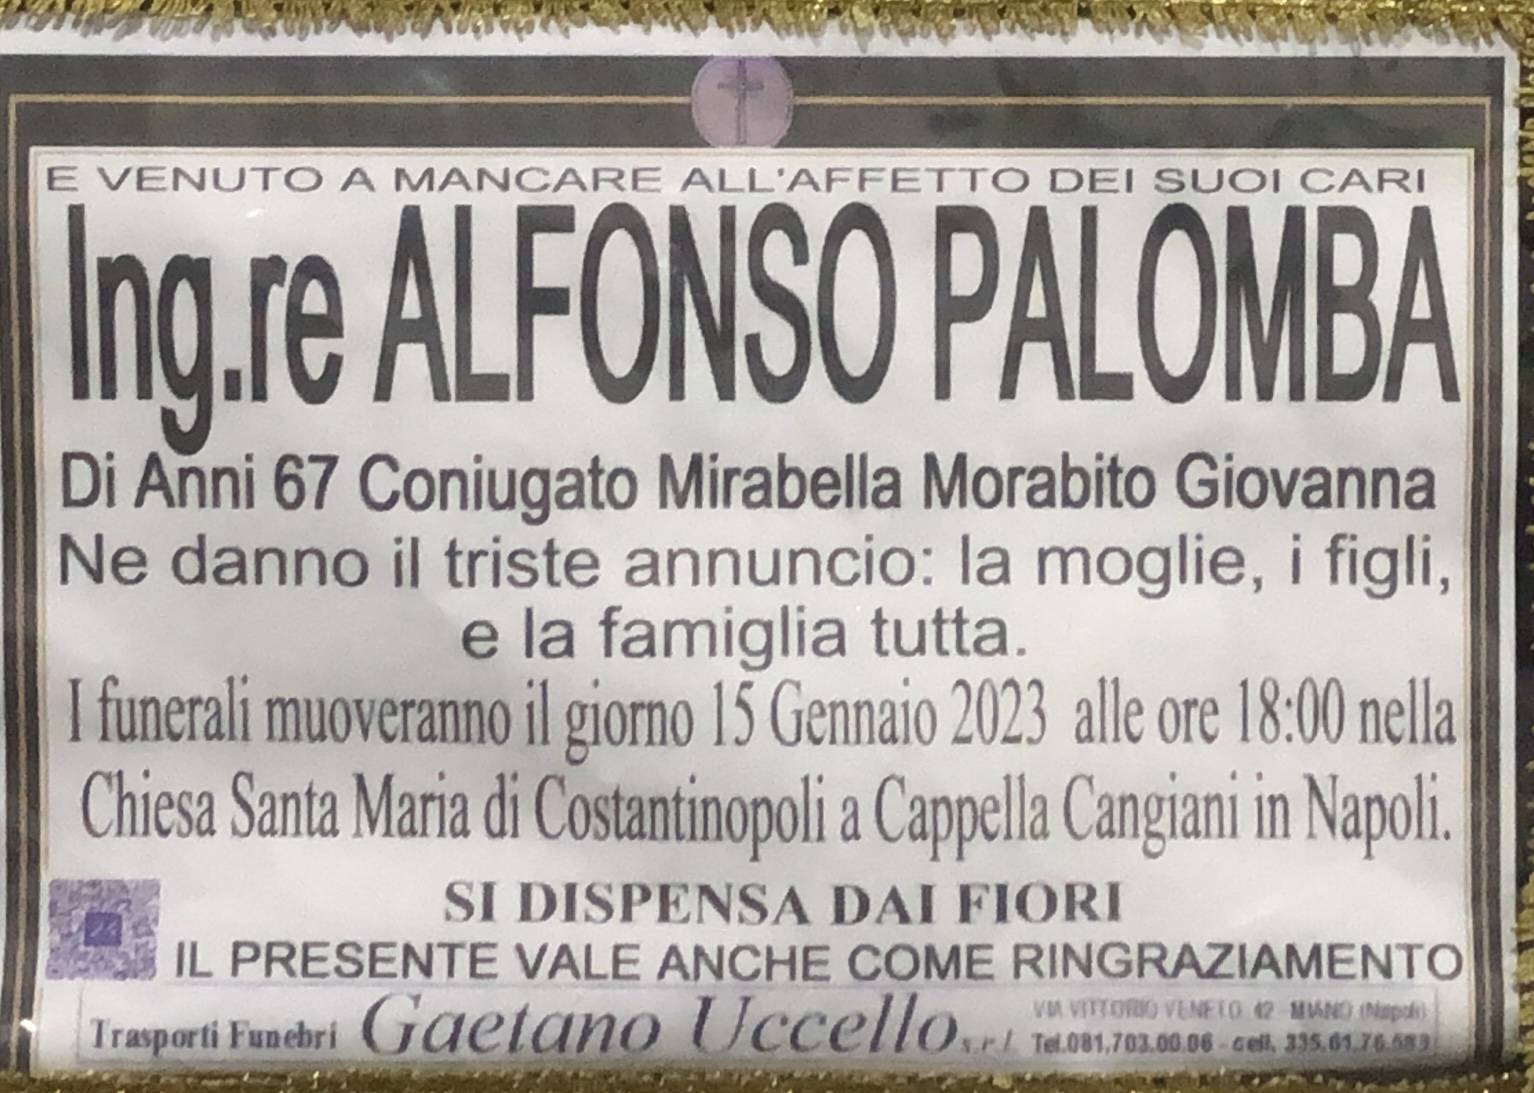 Alfonso Palomba